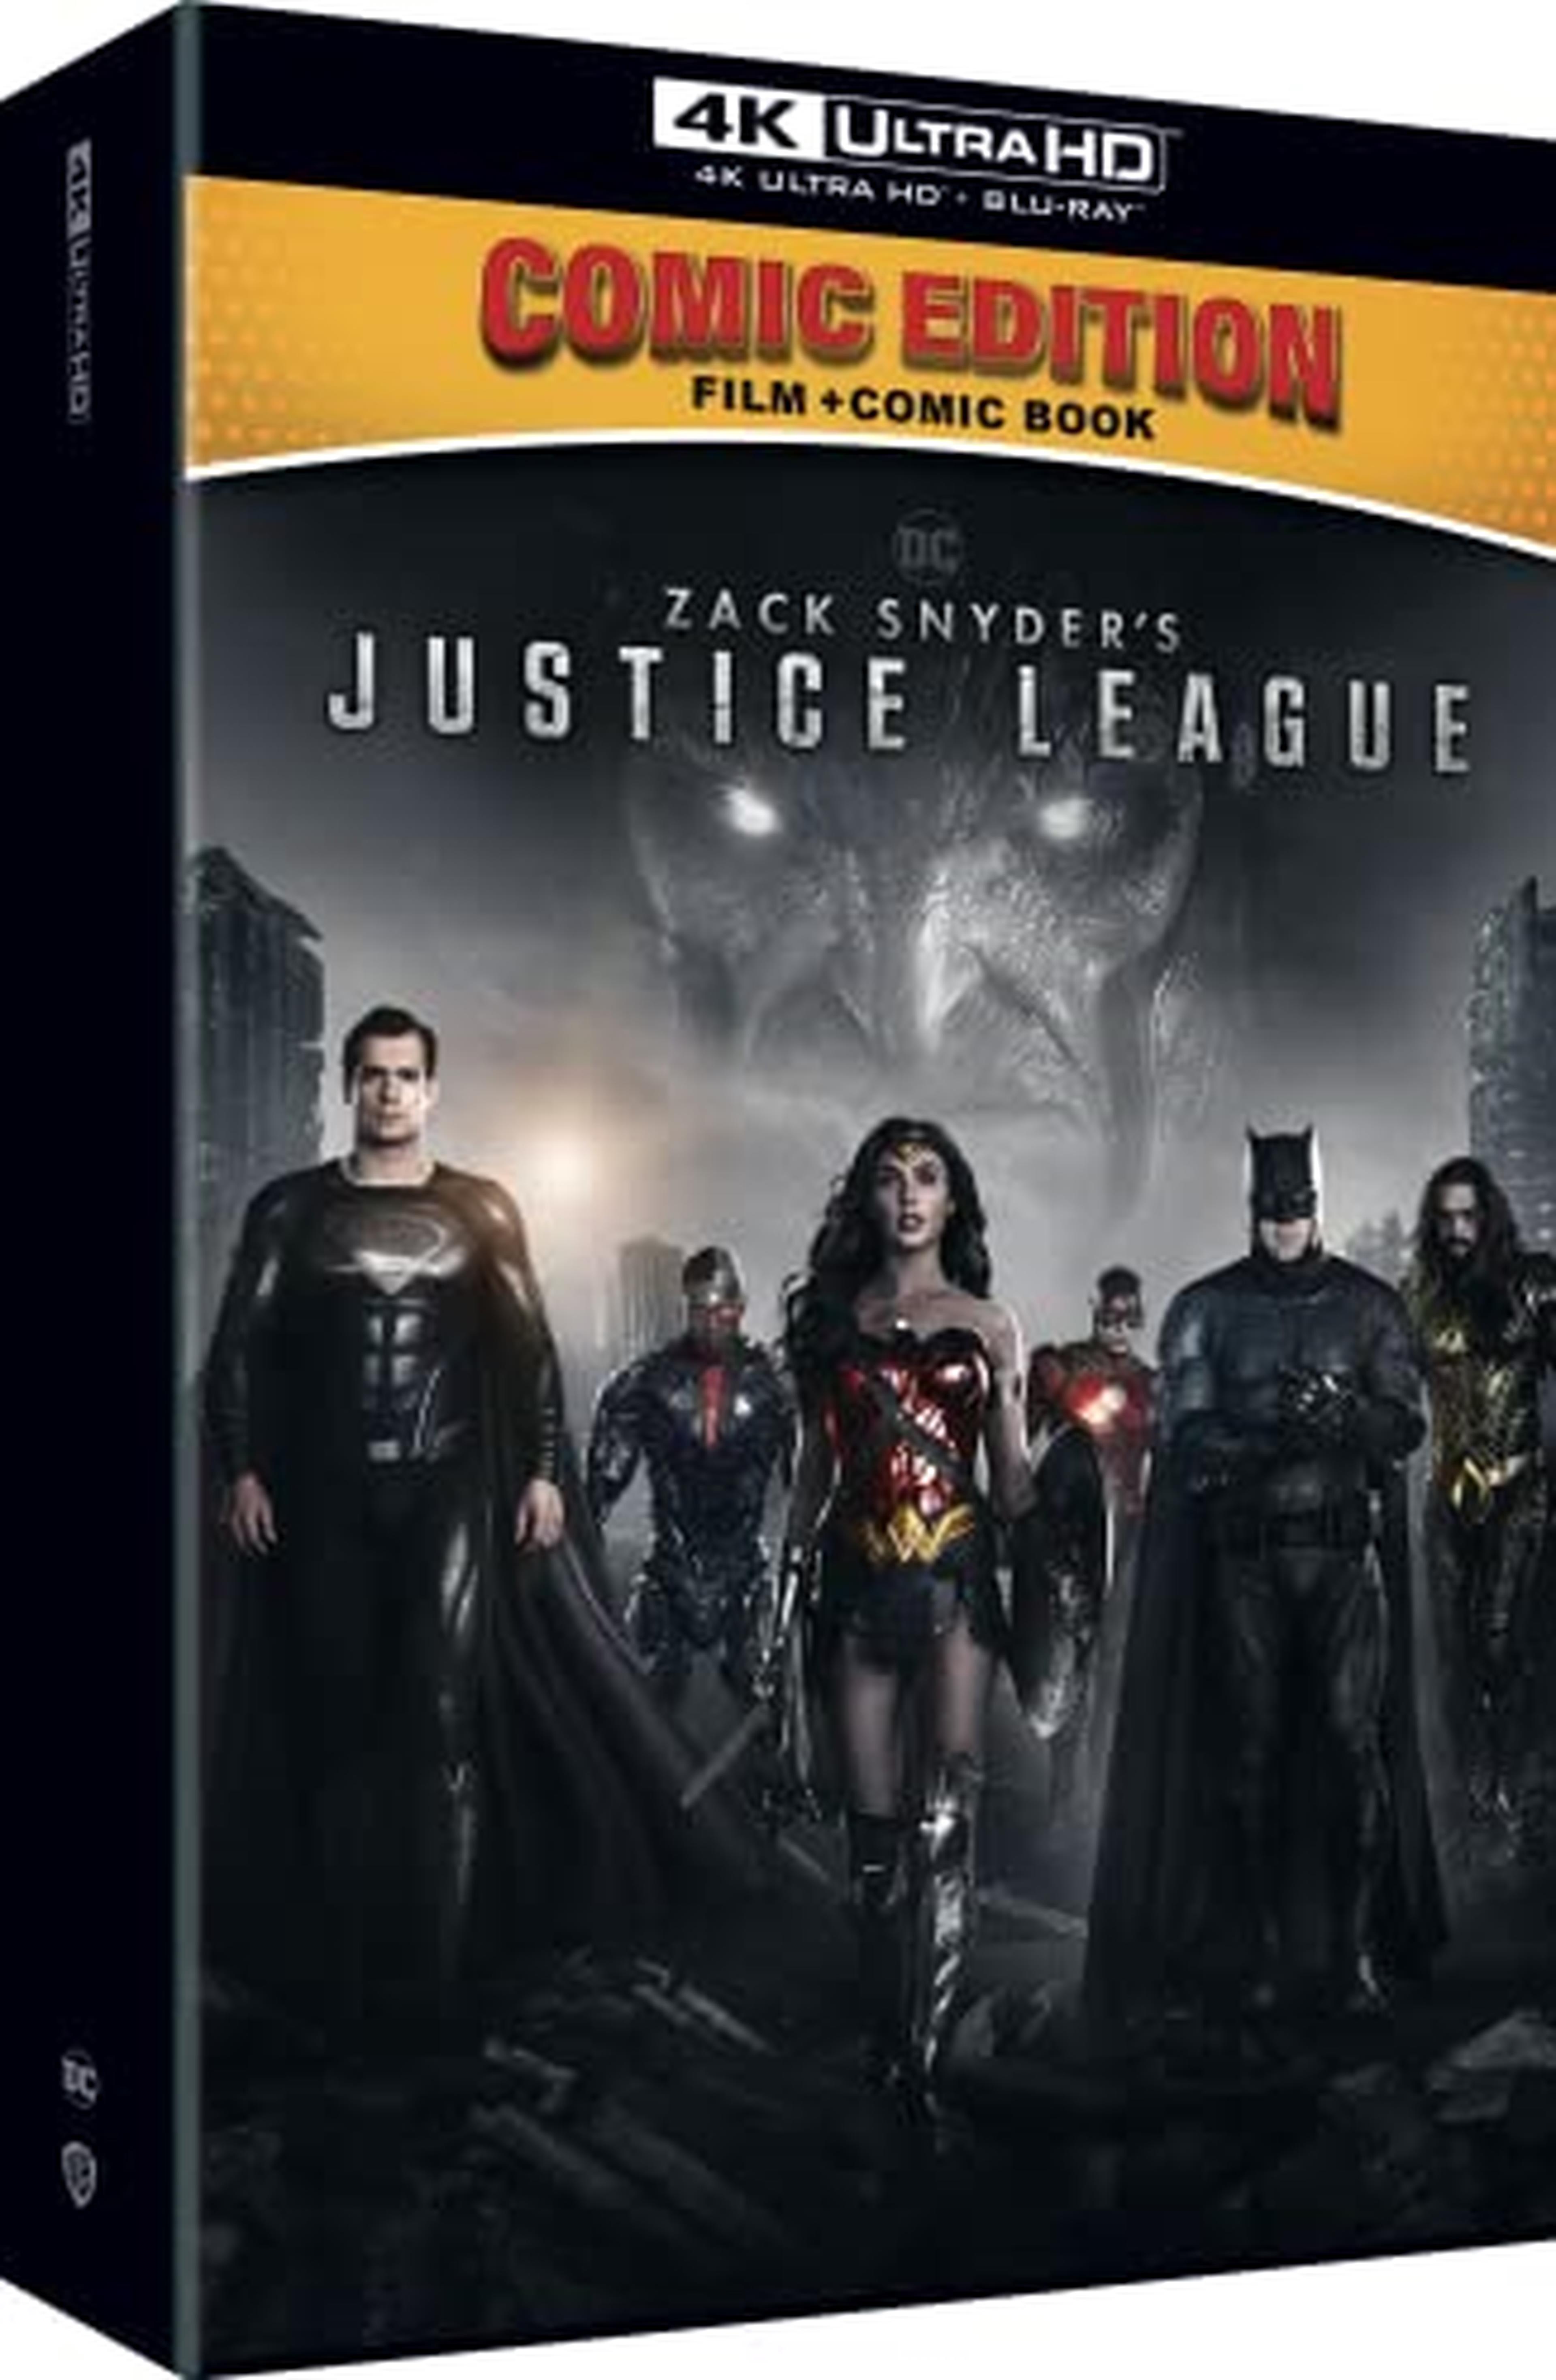 ZACK SNYDER’S JUSTICE LEAGUE COMIC EDITION (4K Ultra HD + Blu-Ray) Contiene: Film 4K UHD + BD Comic Book con cover esclusiva Poster inedito